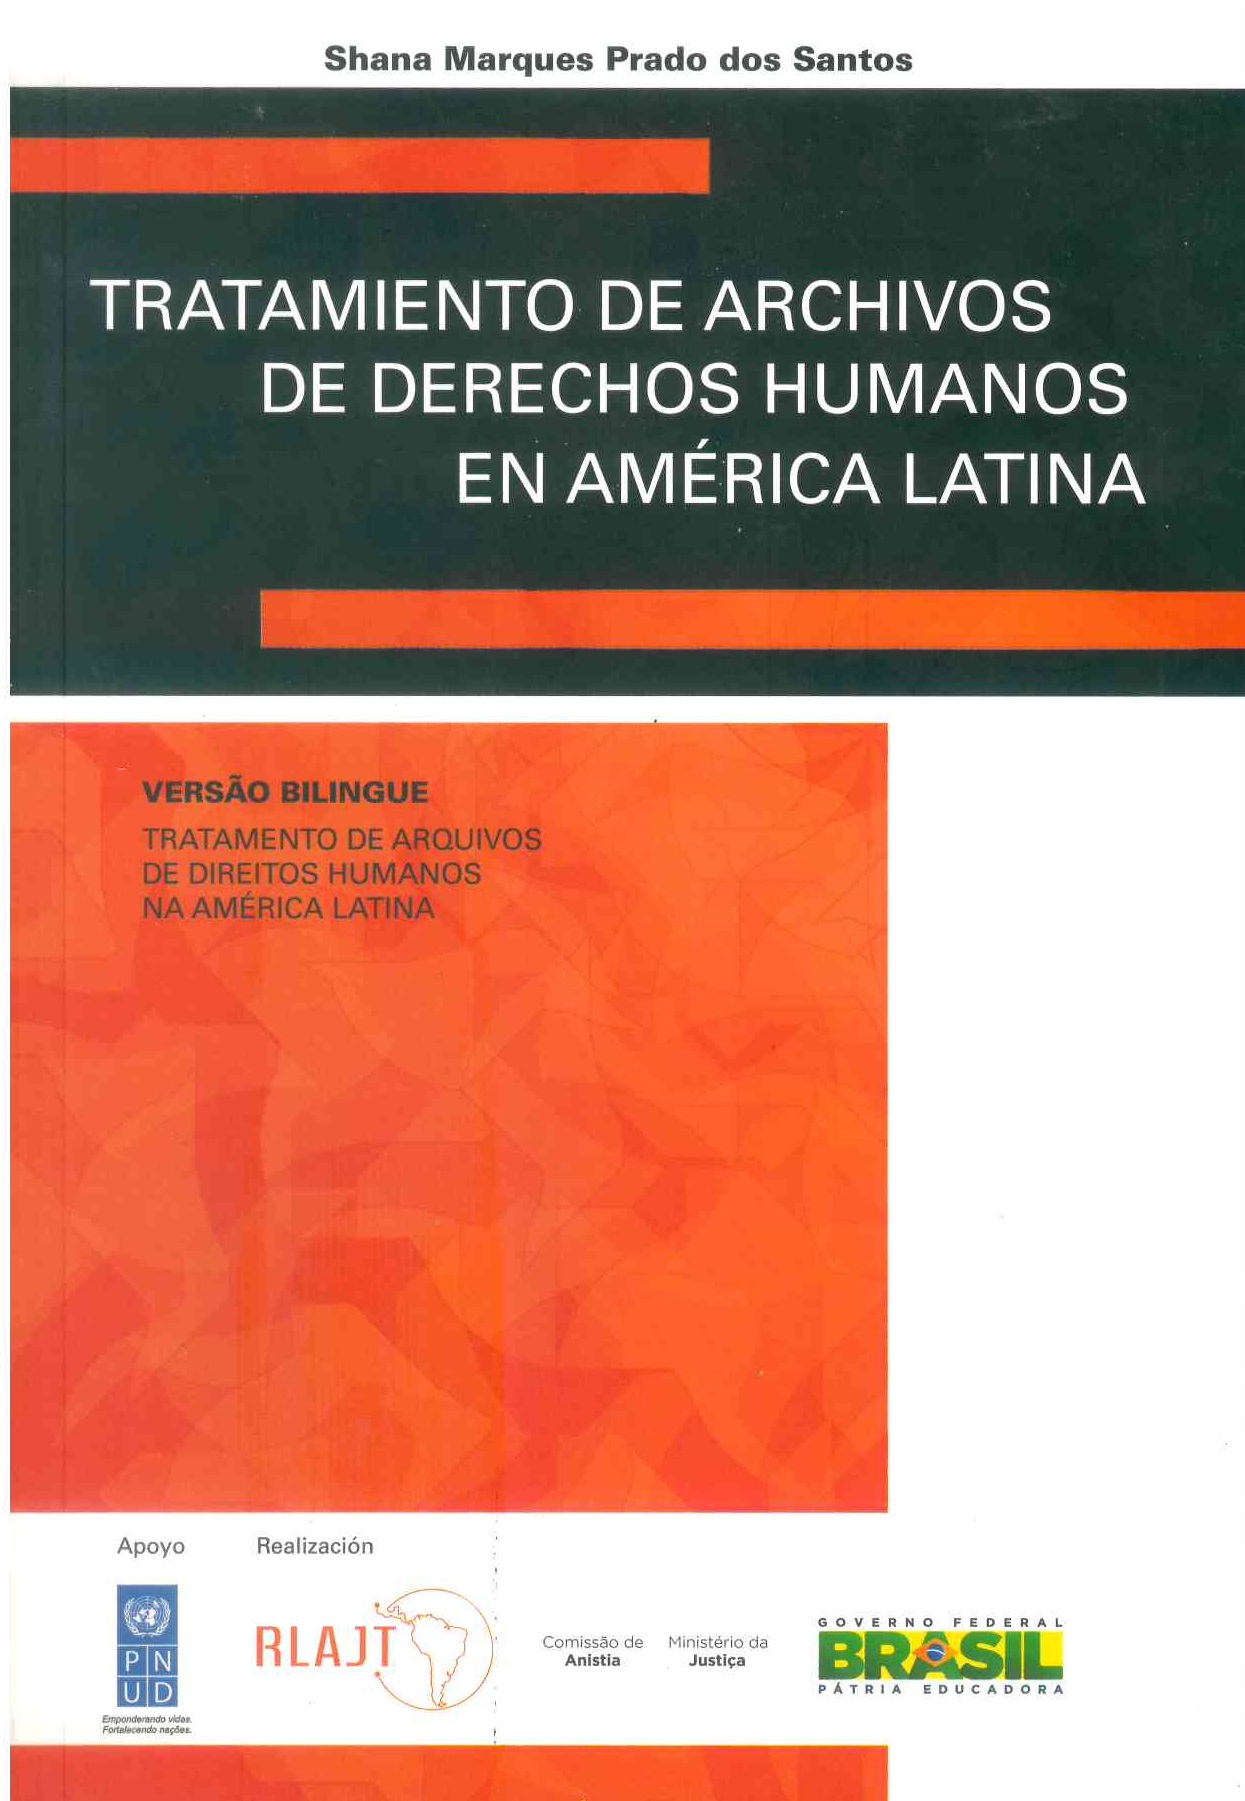 Tratamiento de archivos de derechos humanos en América Latina